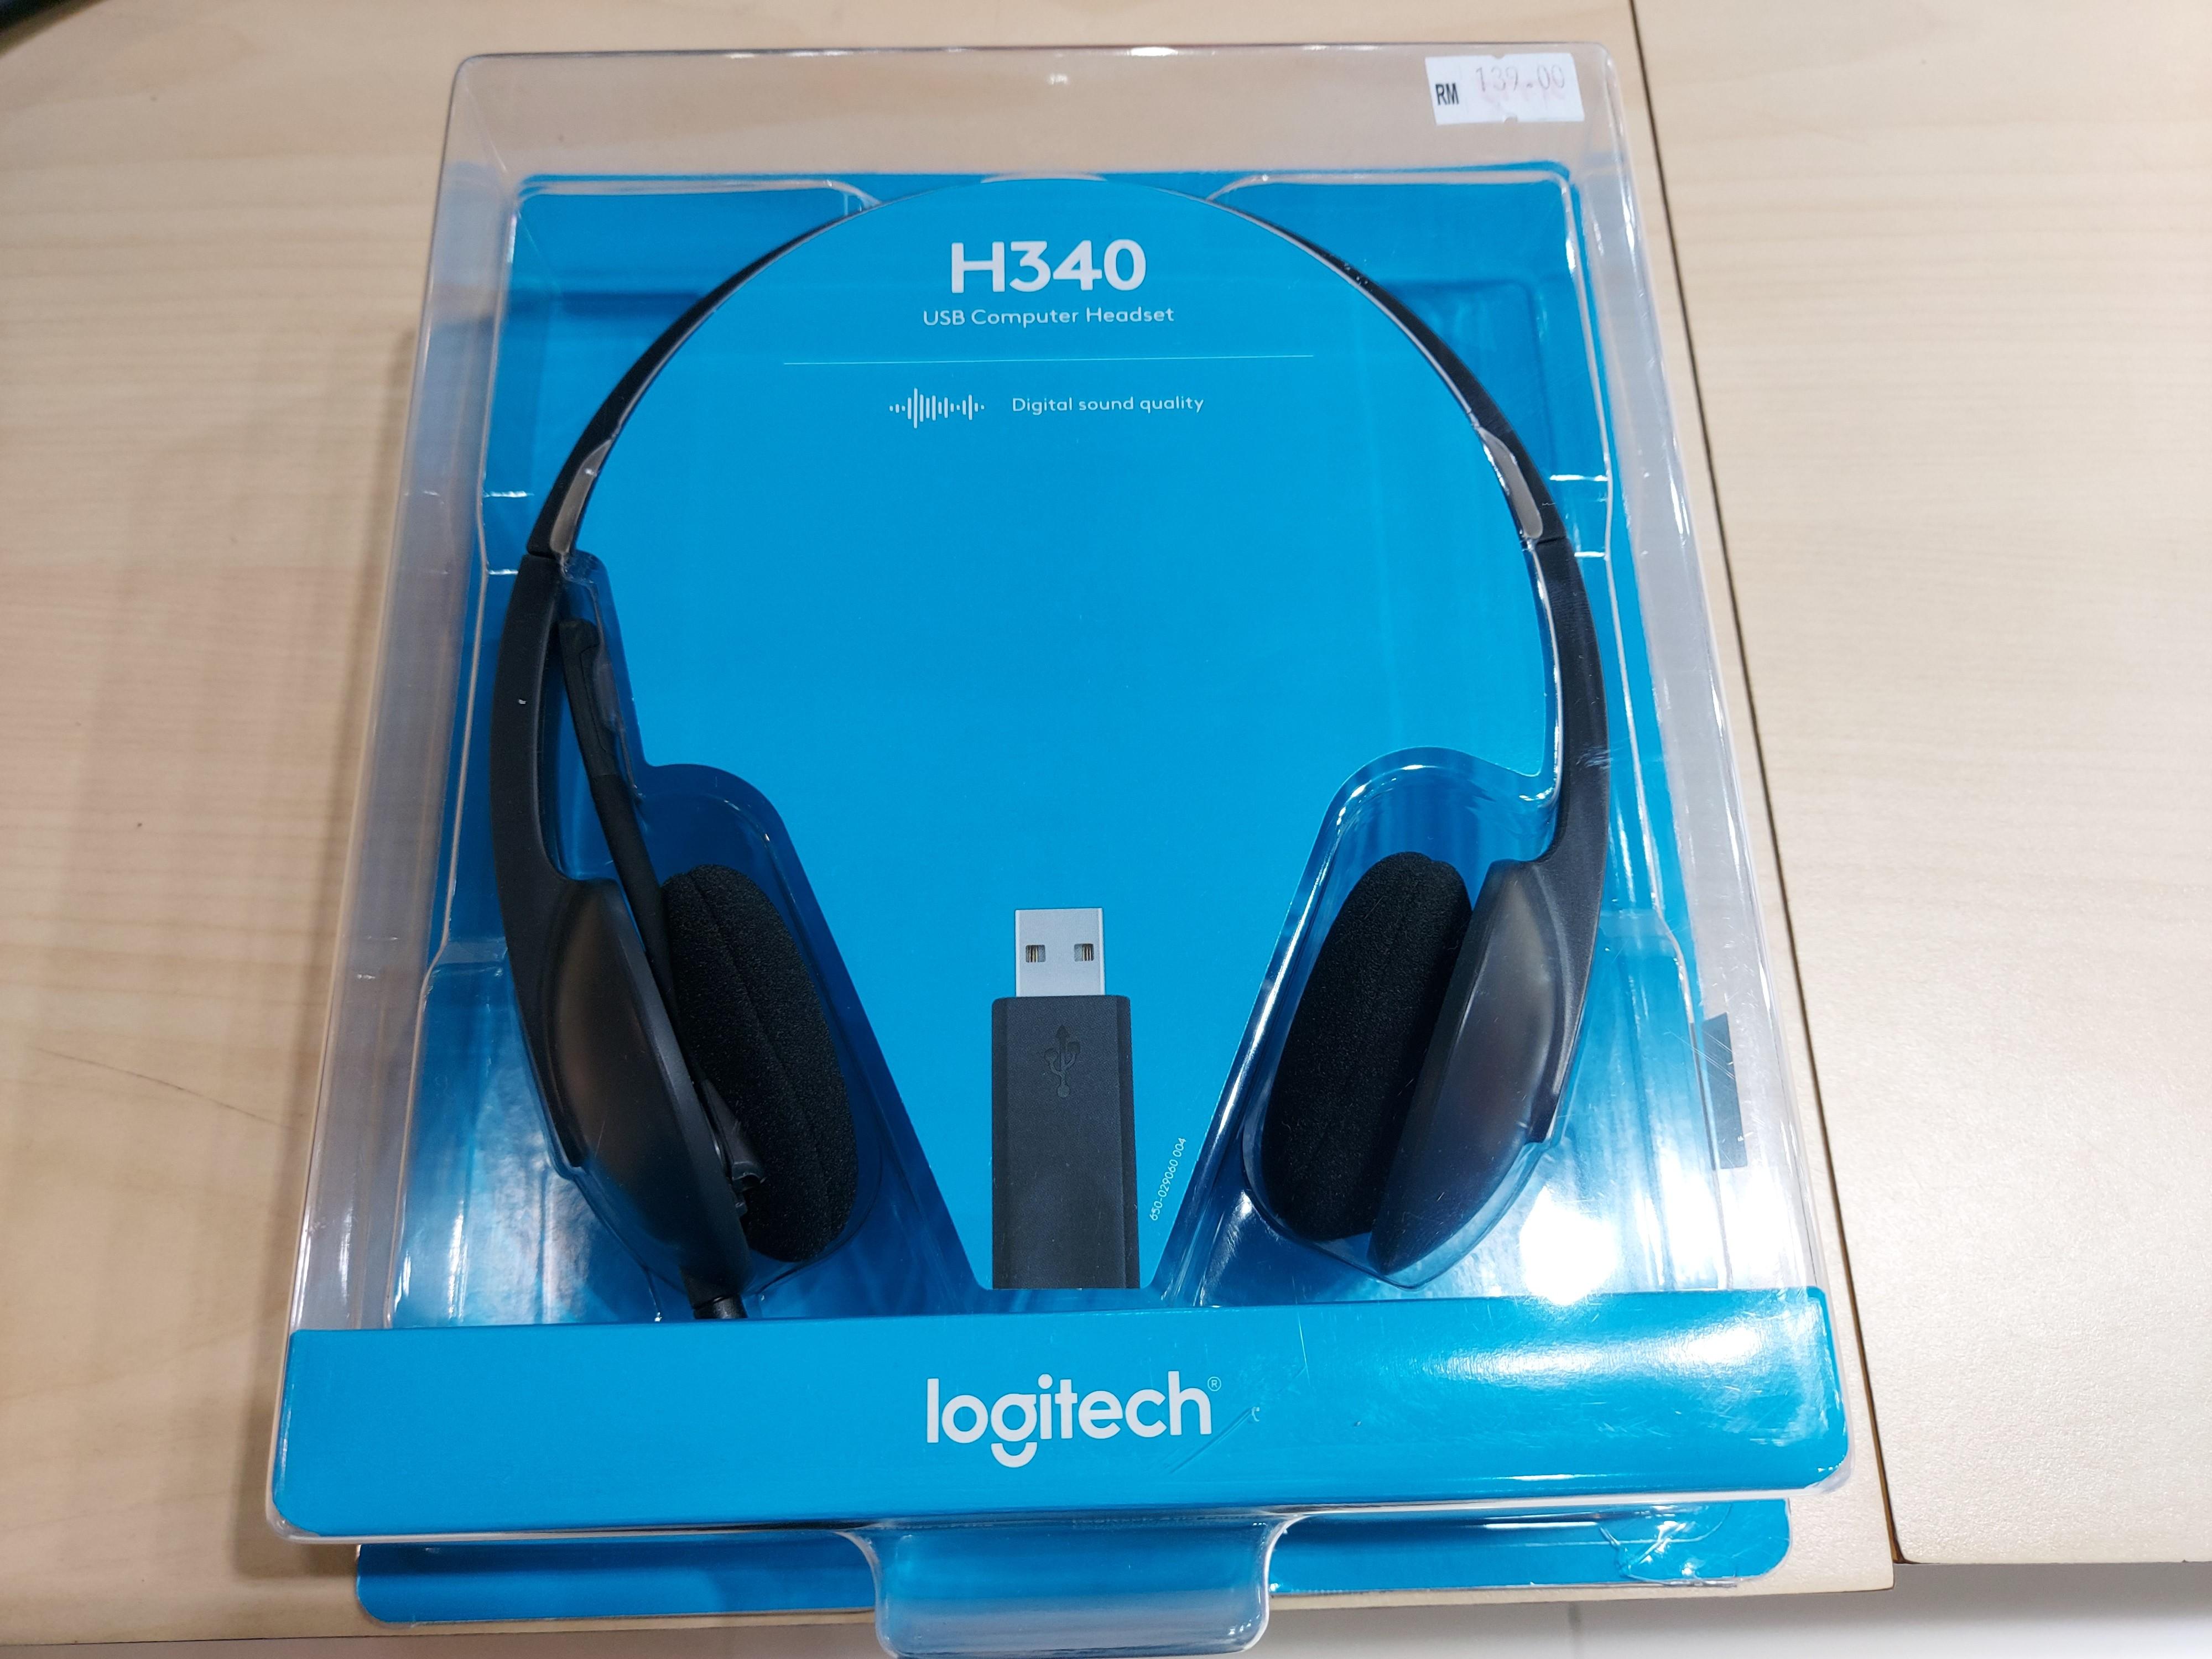 logitech h340 usb computer headset